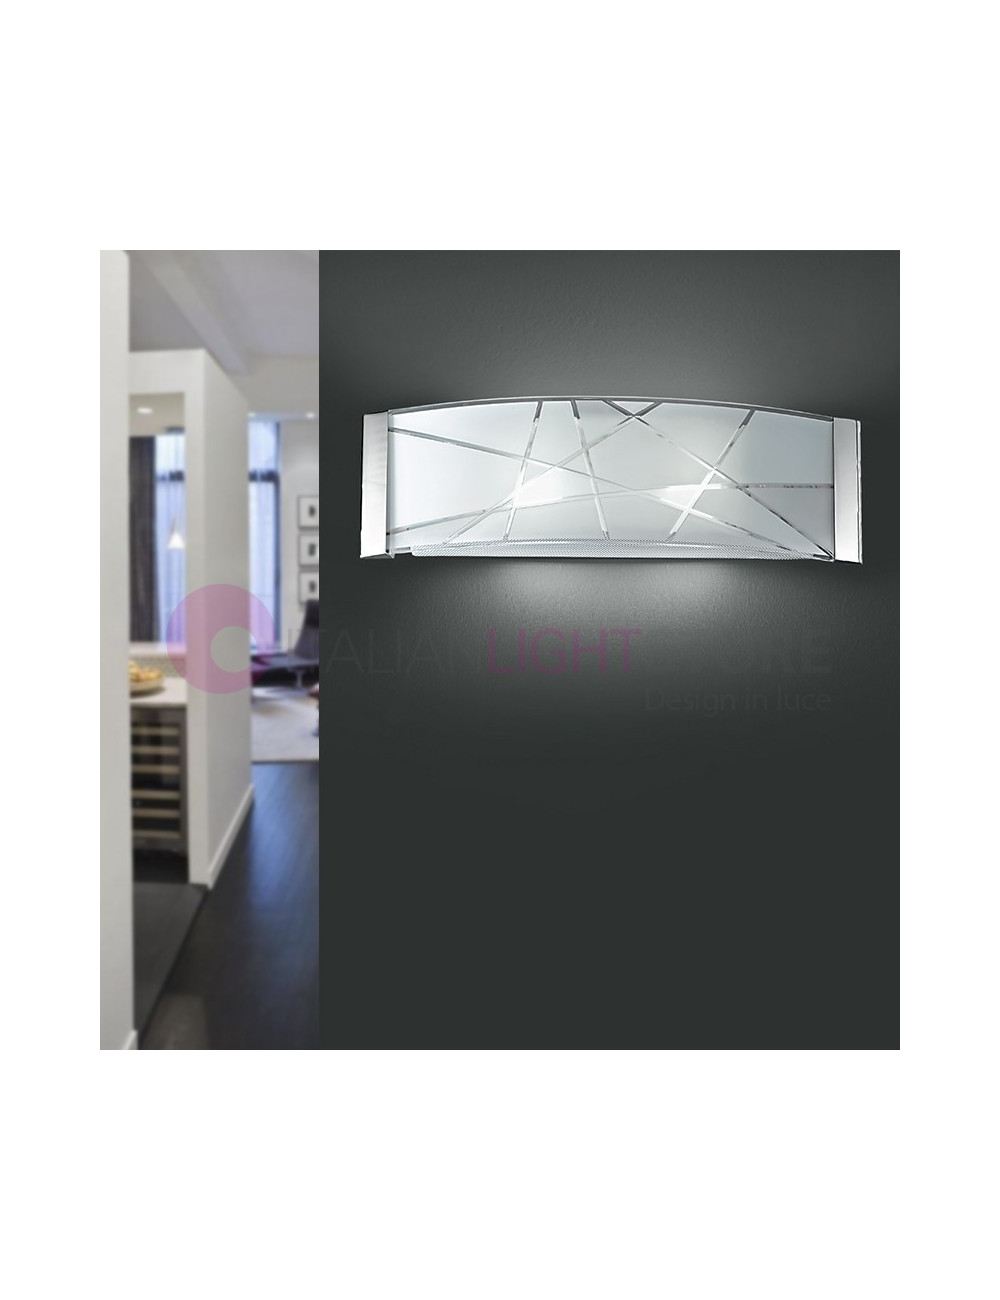 DELTA Lampe de Mur 51X16 Applique Moderne | Perenz